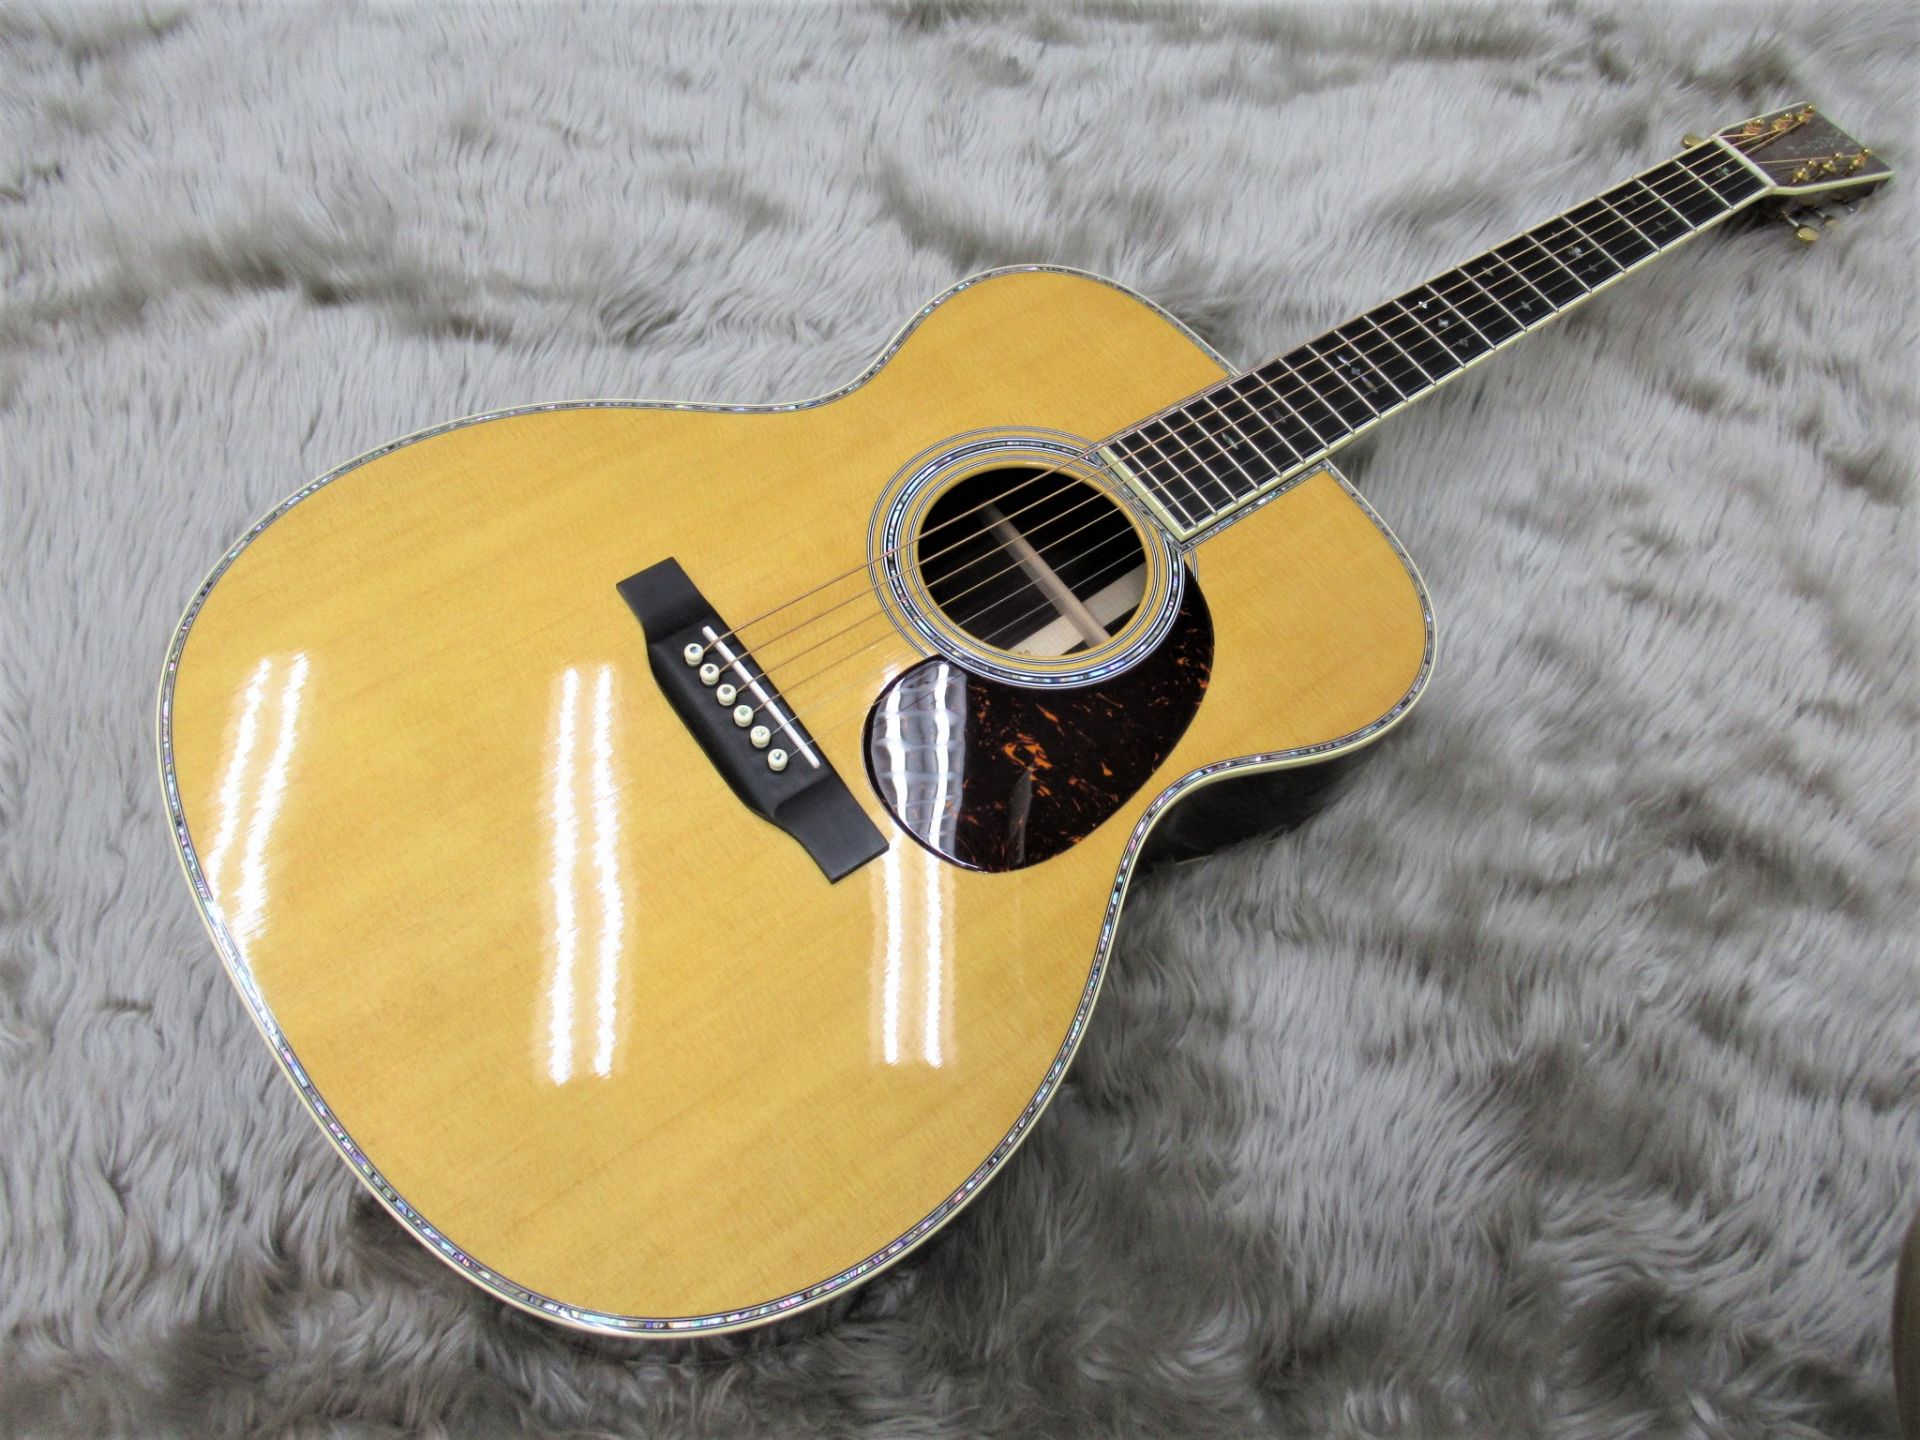 【アコースティックギター】Martin 000-42 Standard展示のご案内